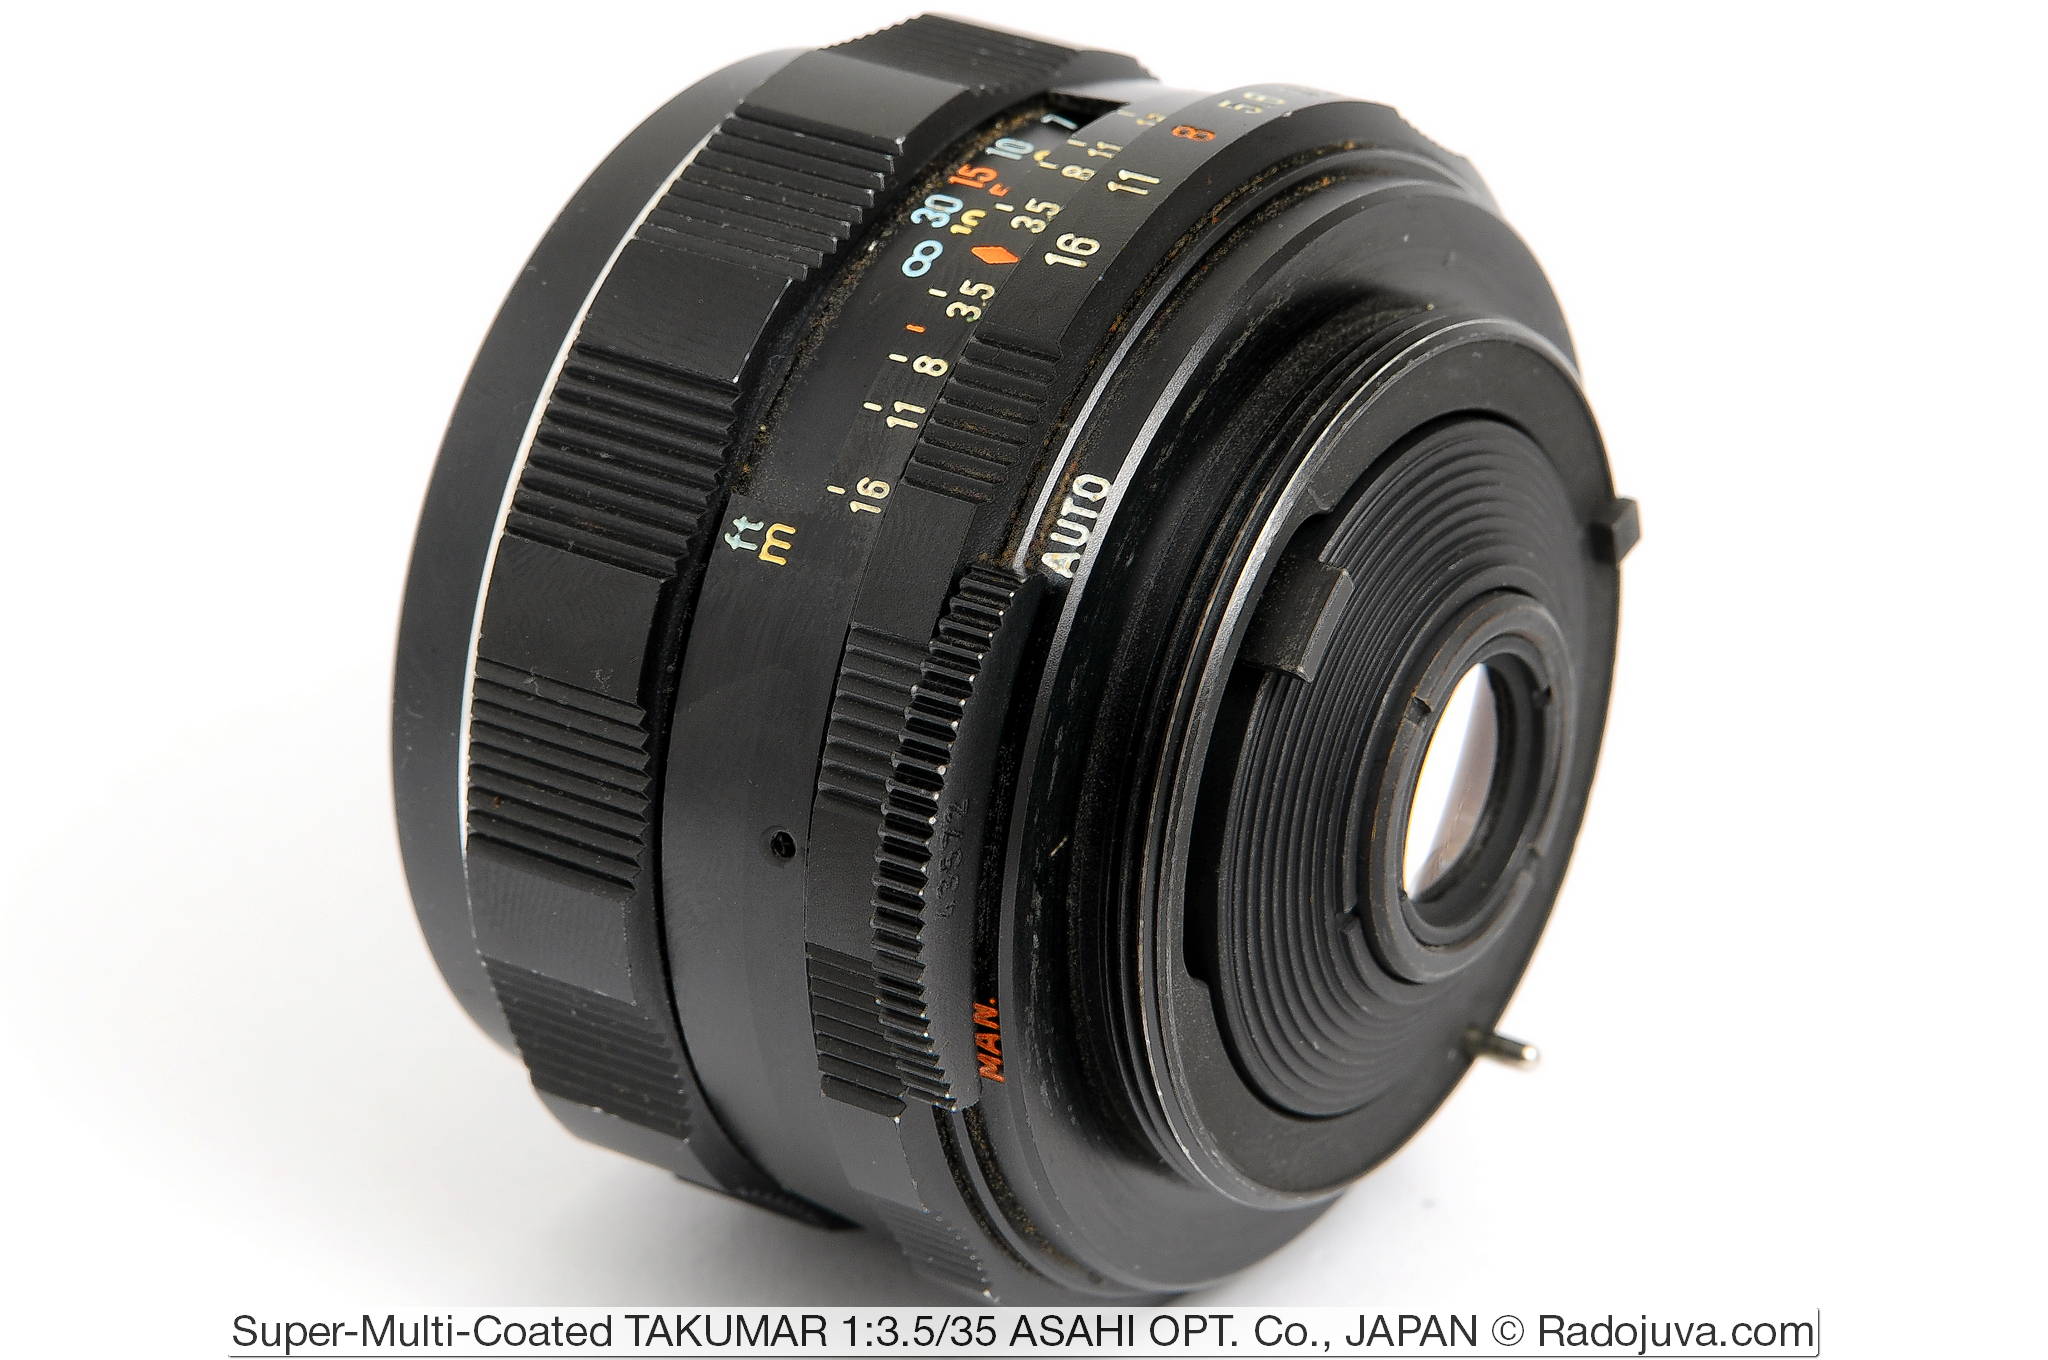 Super-Multi-Coated TAKUMAR 1:3.5/35 ASAHI OPT. Co., JAPAN